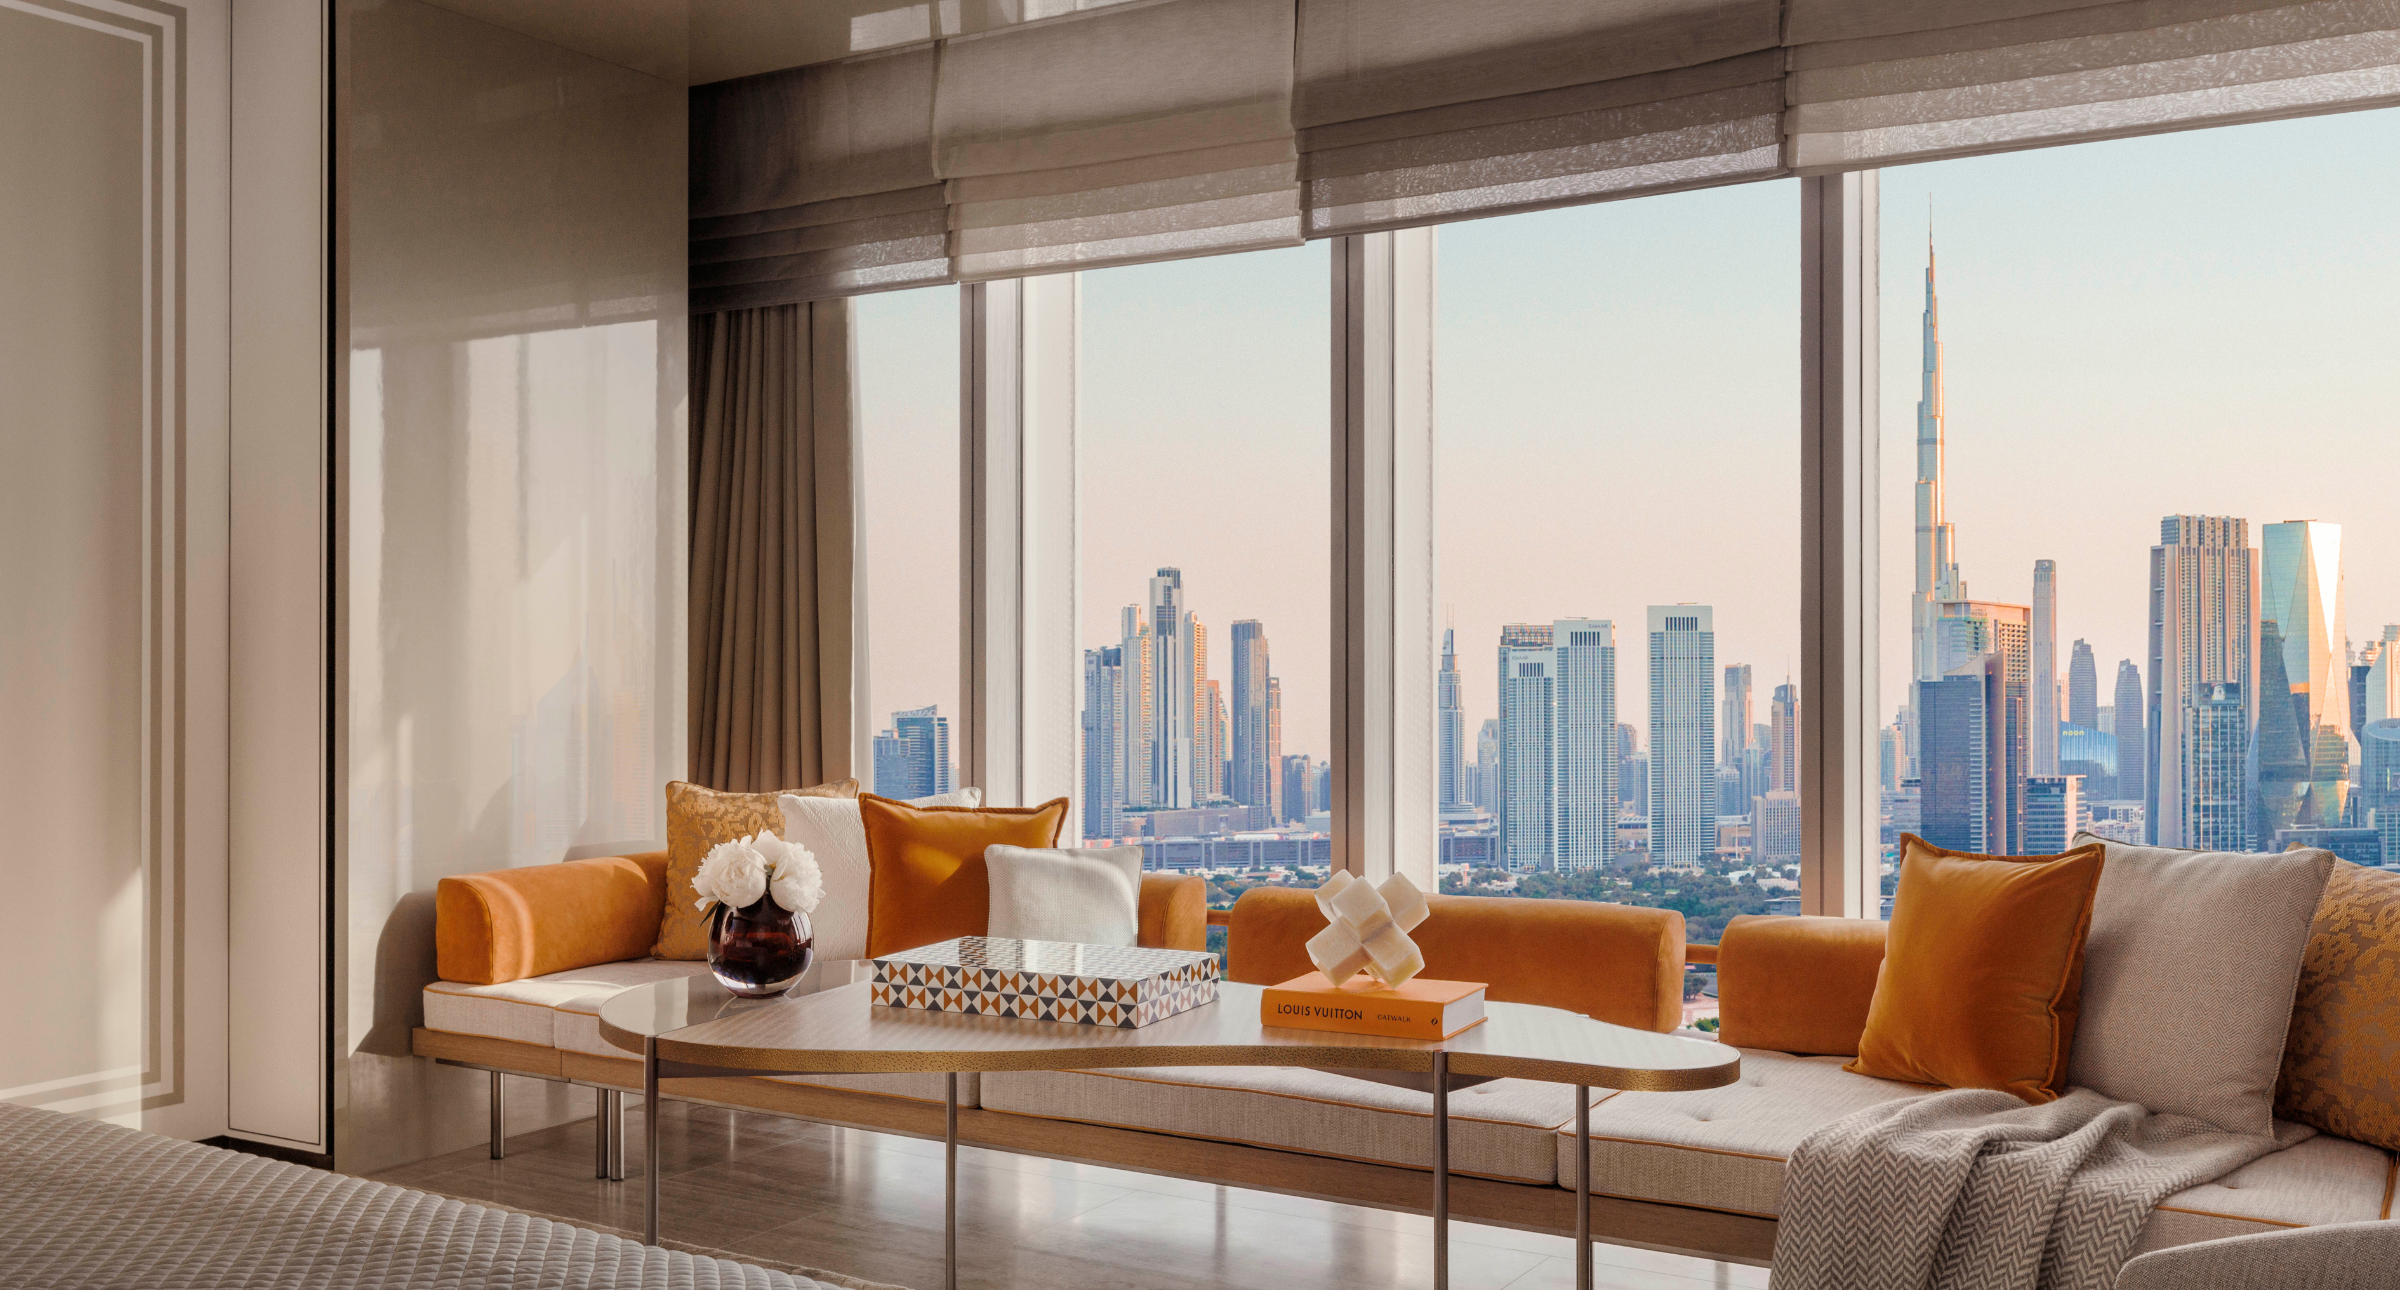 【#Travel】沙漠裡的城市奢華， One&Only One Za'abeel 酒店以雙塔建築結合簡約和諧的裝潢設計，創造杜拜高級旅宿新境界